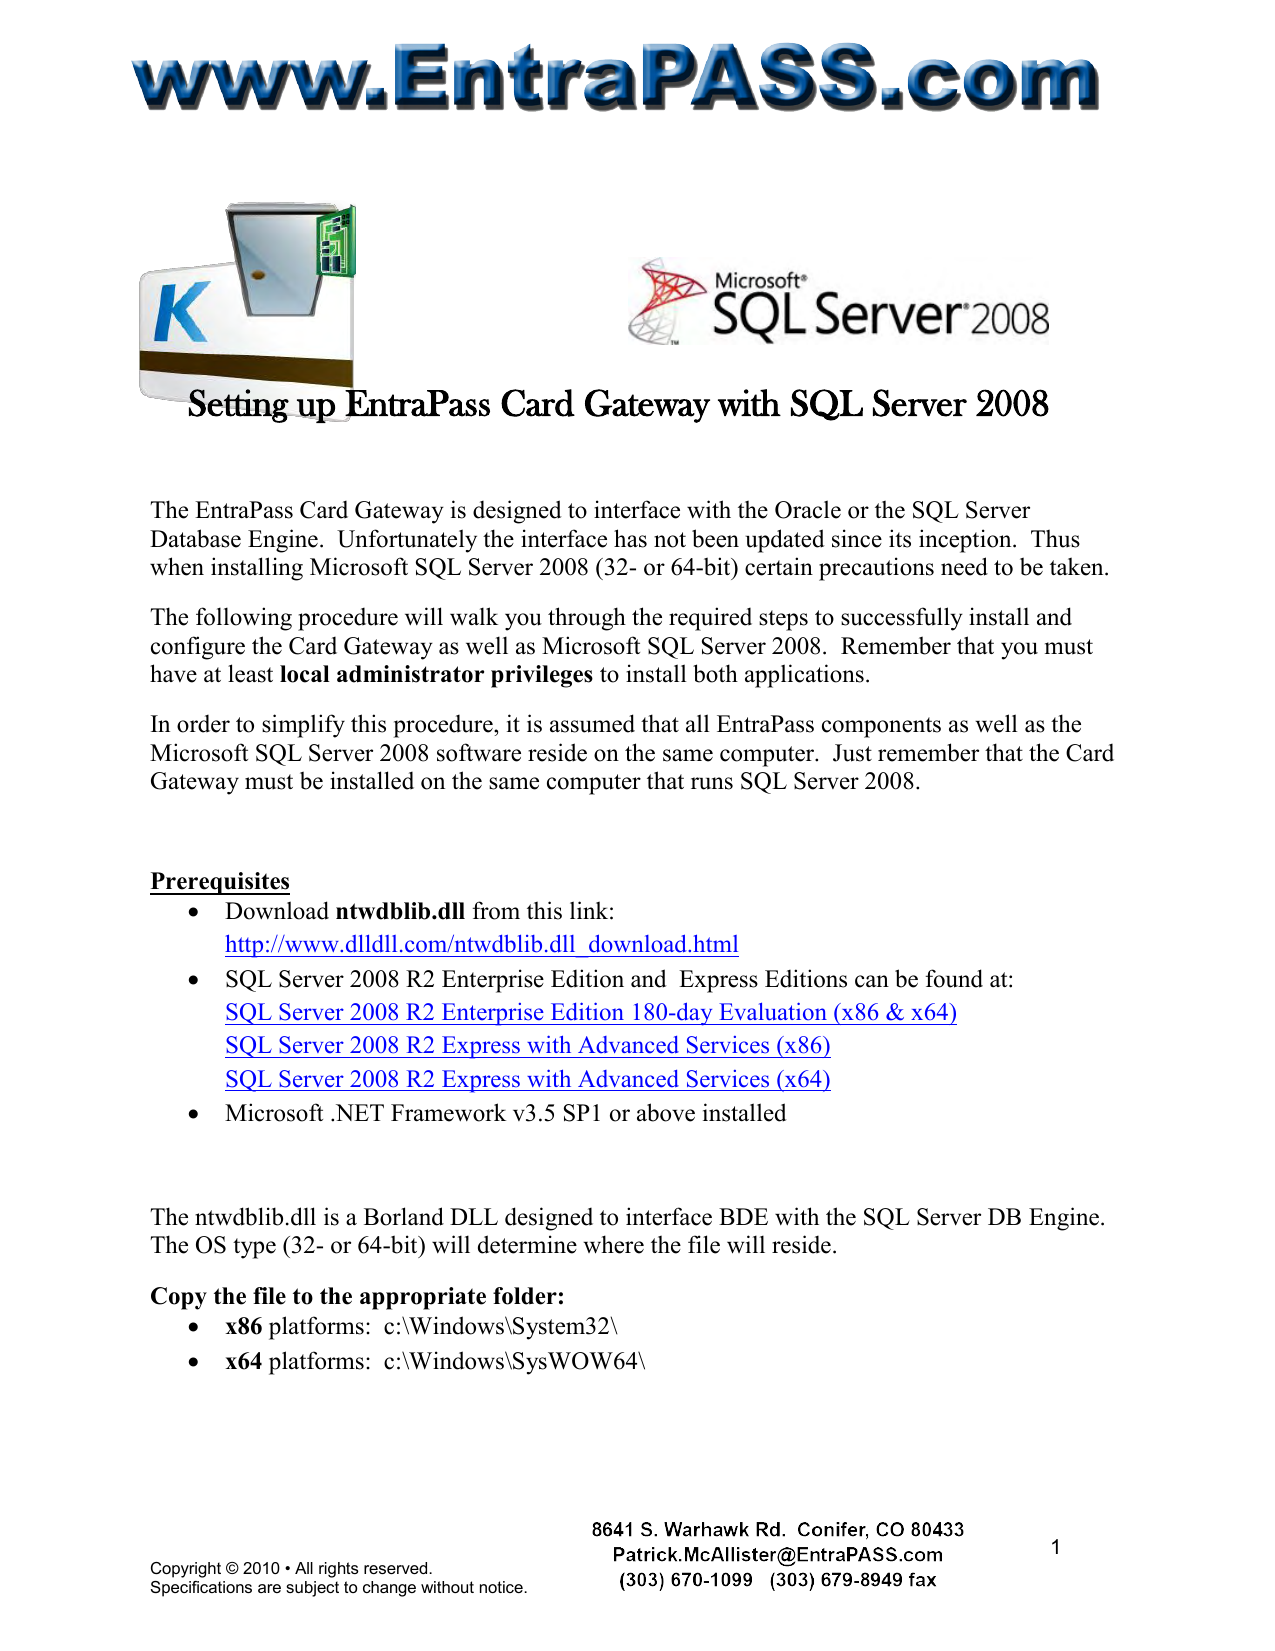 download sql server 2008 r2 x64 express